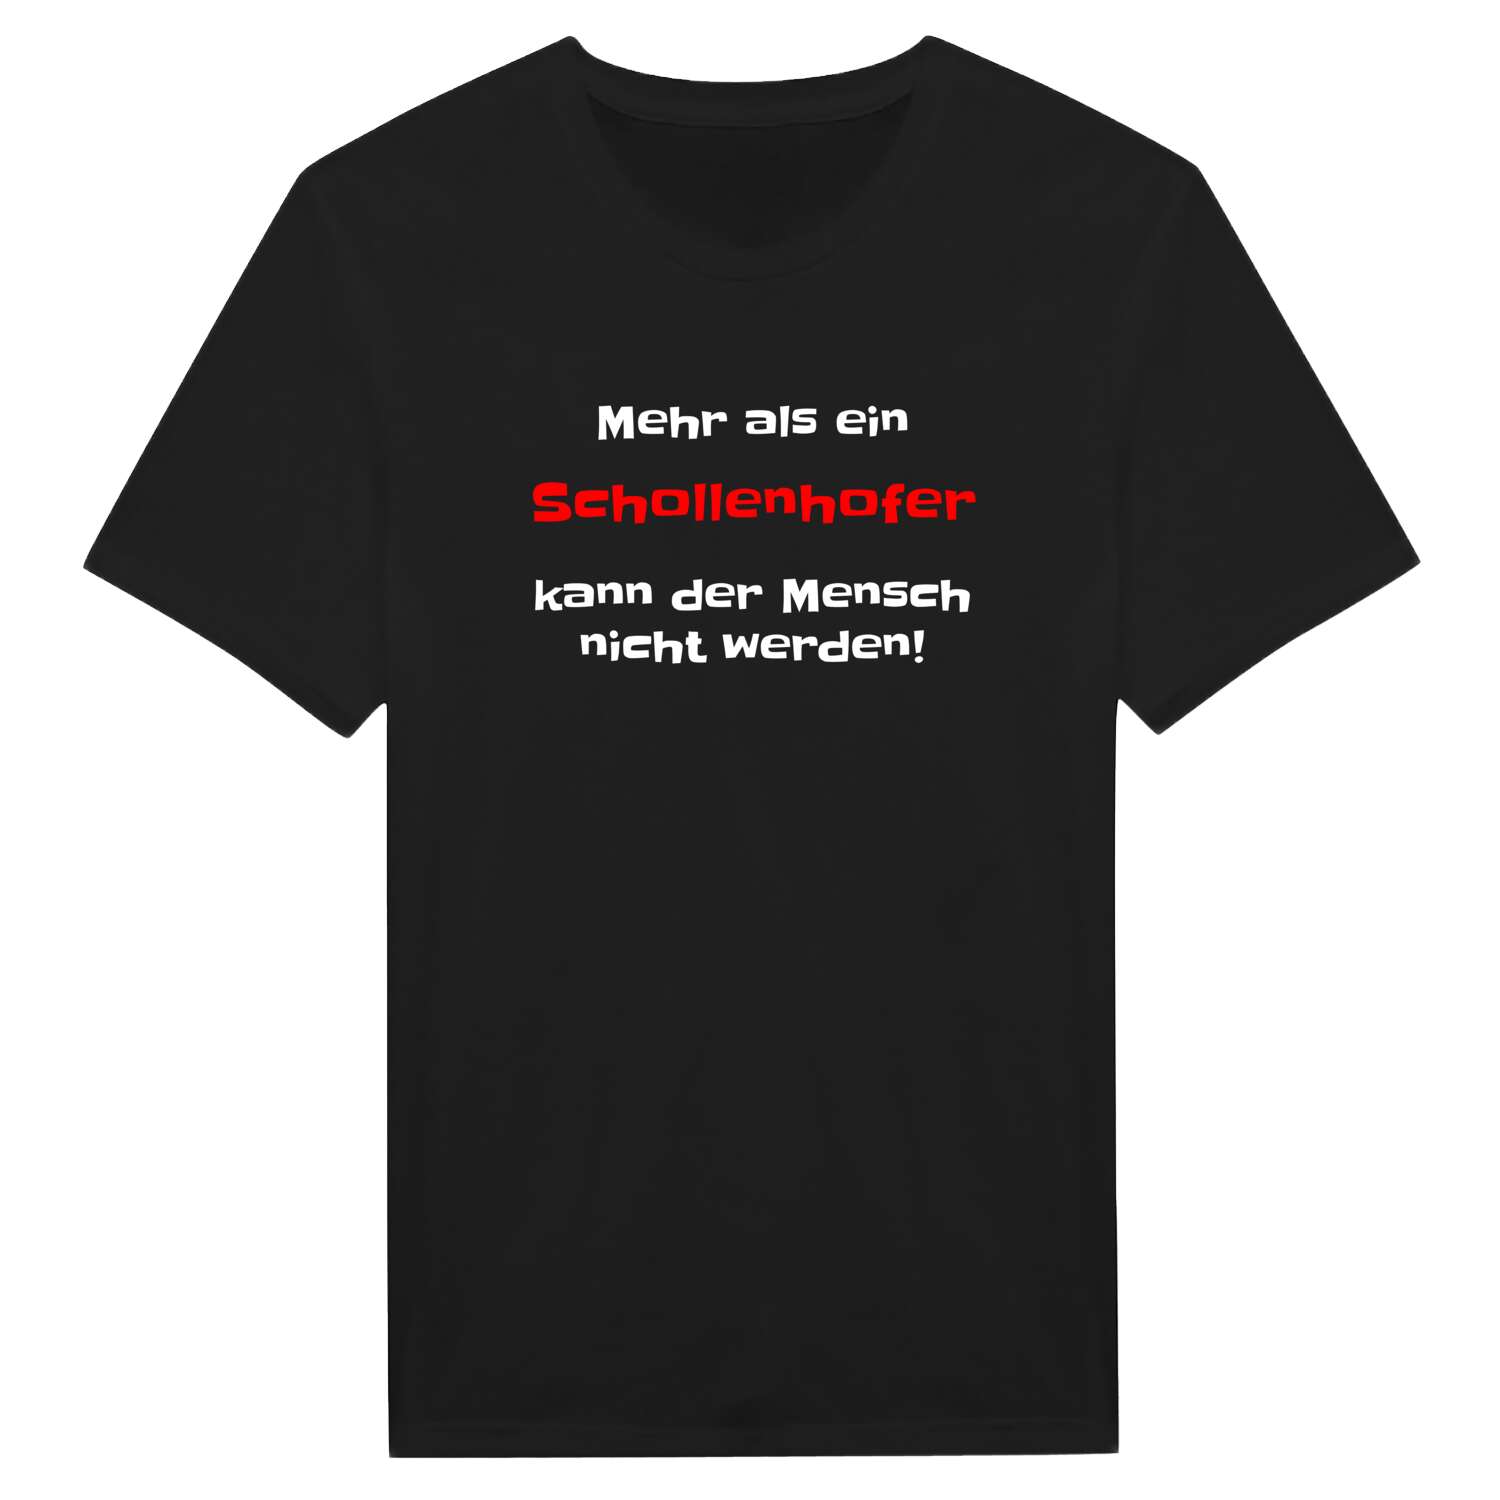 Schollenhof T-Shirt »Mehr als ein«